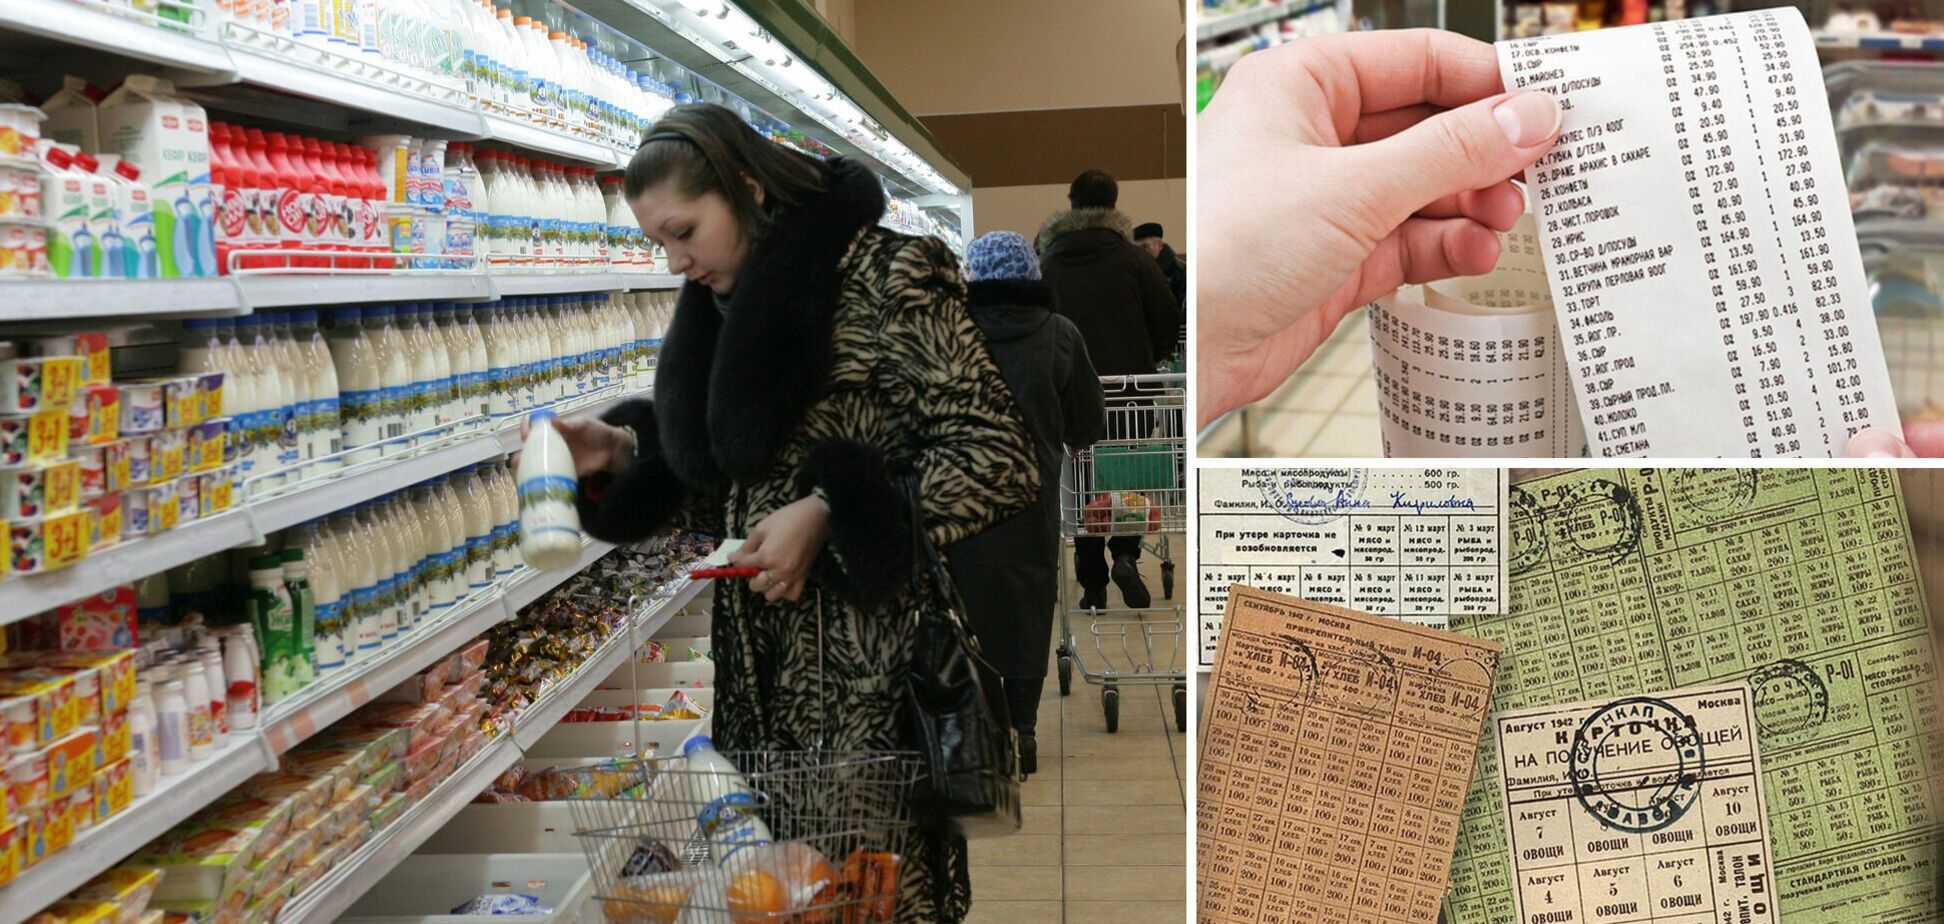 Идея с продуктовыми картами свидетельствует о провале экономической политики власти, – Осадчук